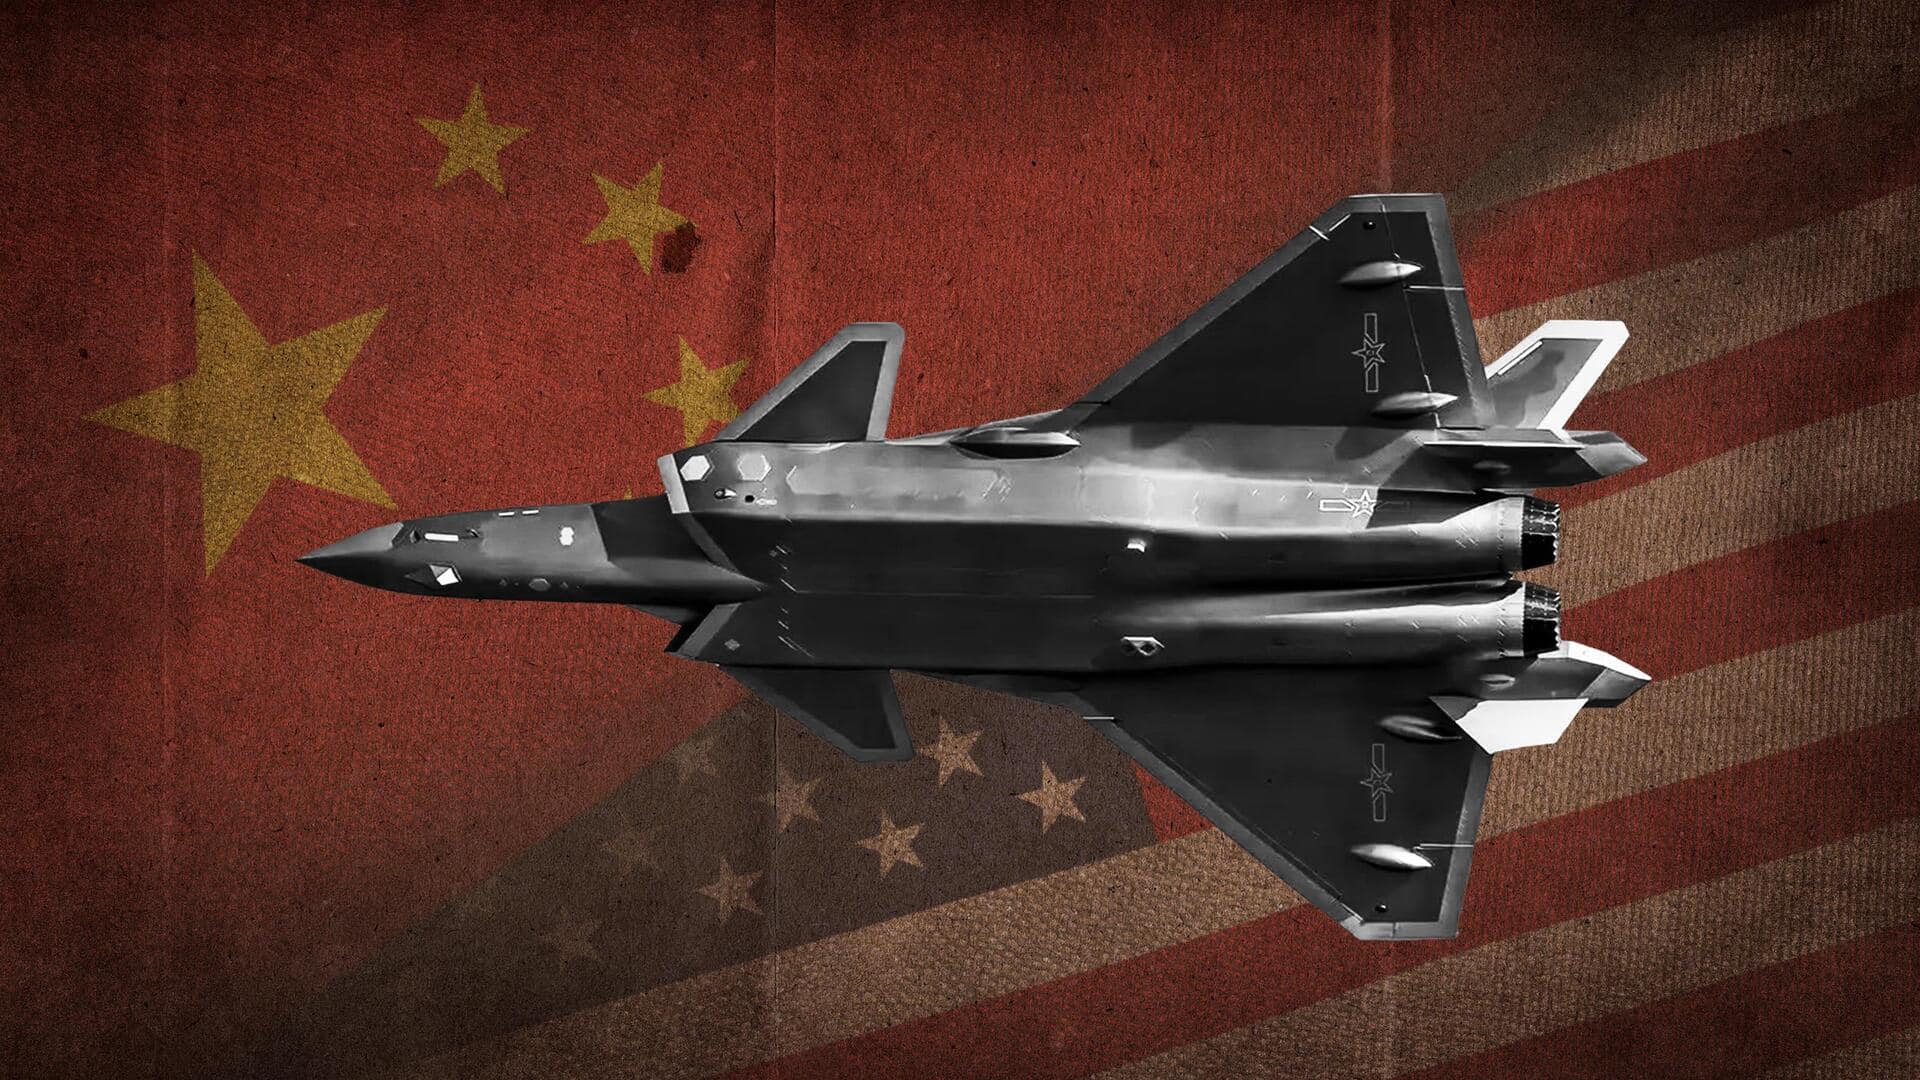 दक्षिण चीन सागर के ऊपर अमेरिकी विमान के सामने आया चीनी विमान, दिखाई आक्रामकता